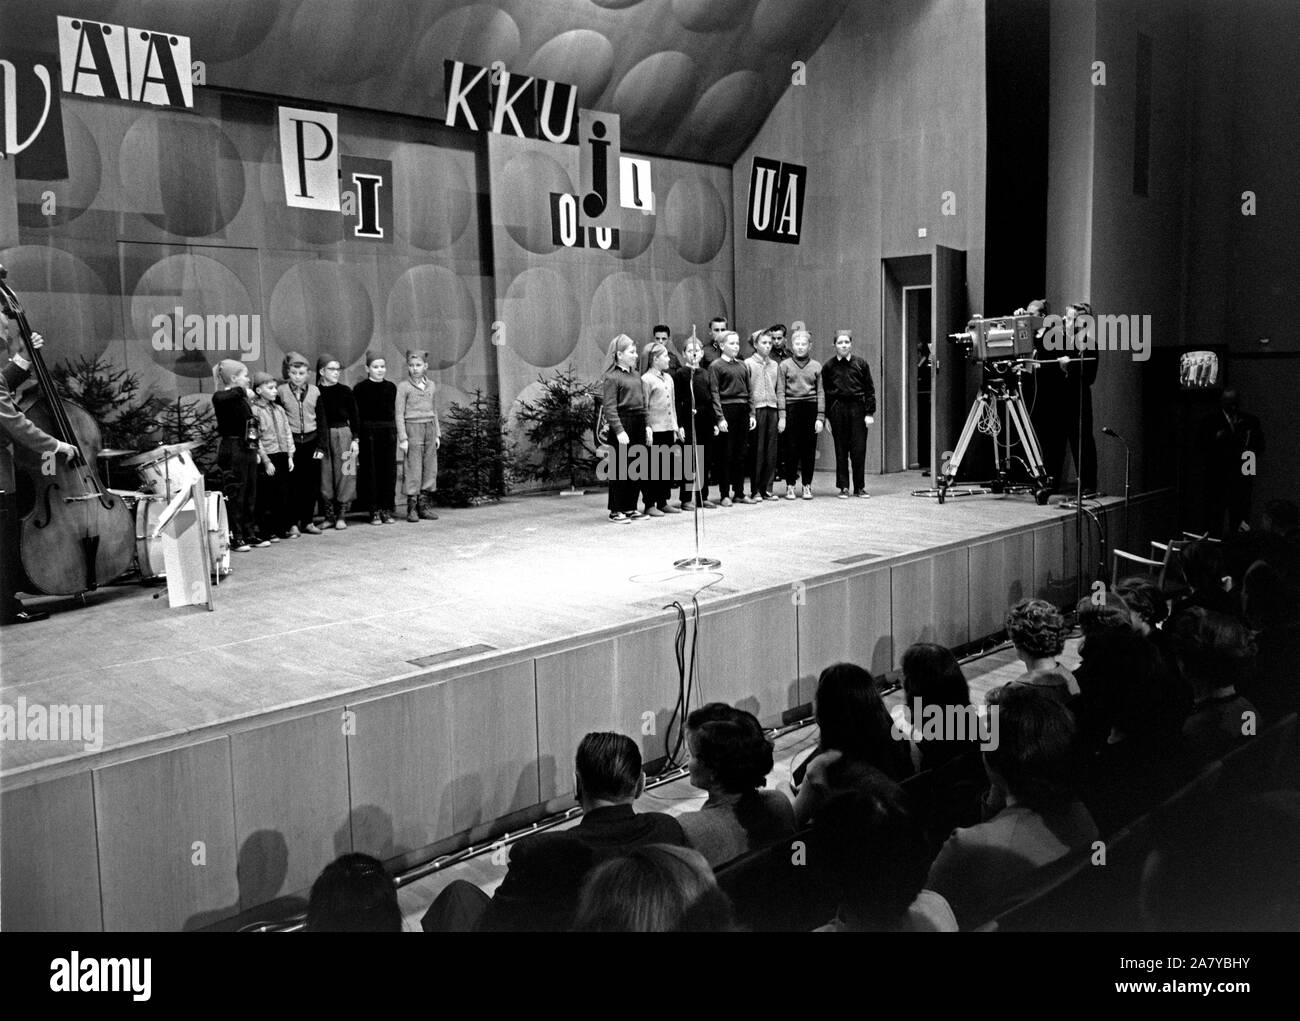 Yleisradion televisiotoiminnan ensimmäinen julkinen televisioitu lähetys 30.11.1957 Ruotsinkieliseltä kauppakorkeakoululta Helsingistä (Svenska handelshögskolan, Hanken). Lapsikuoro 'Tontut' laulaa joululauluja näyttämöllä, Onni Gideonin yhtye vasemmalla. Televisio-ohjelma 'Pikkujoulu on taas'. Stock Photo